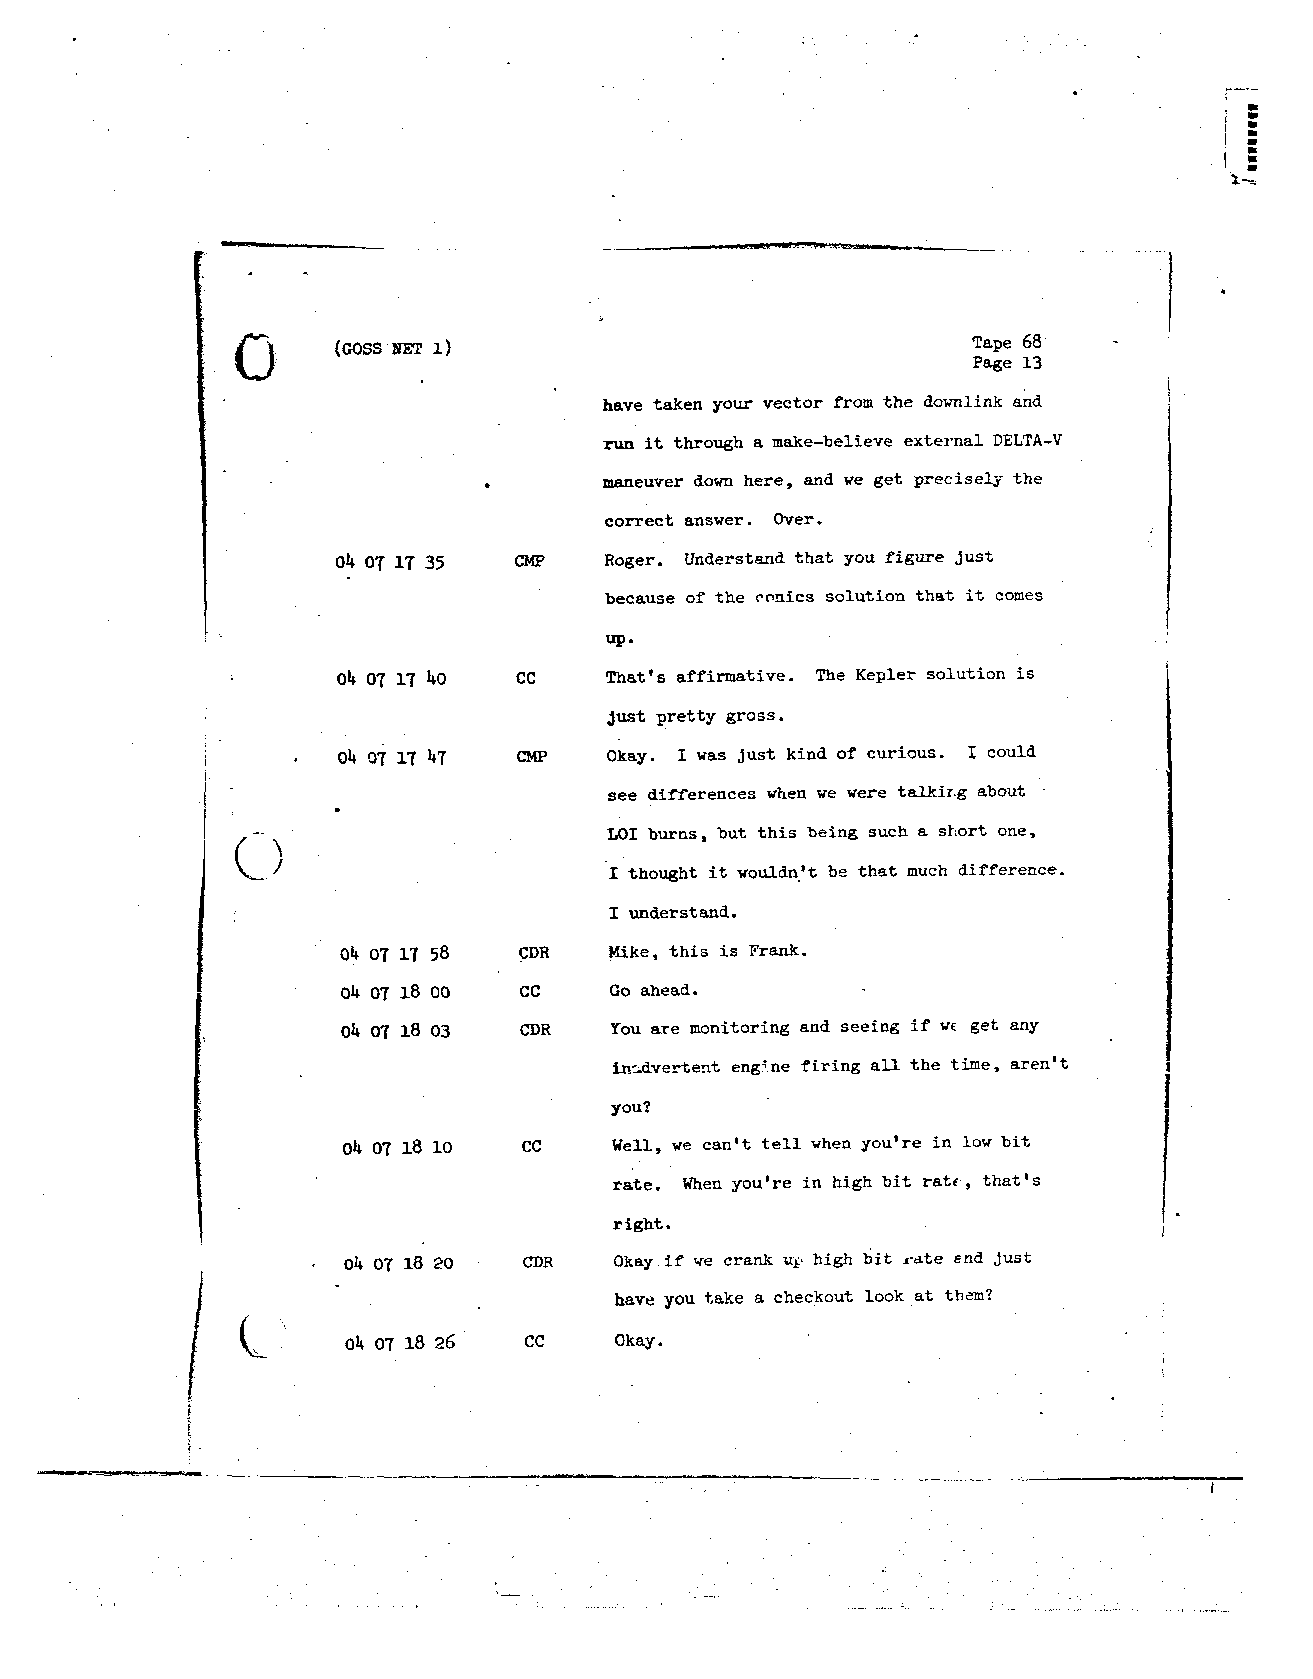 Page 545 of Apollo 8’s original transcript